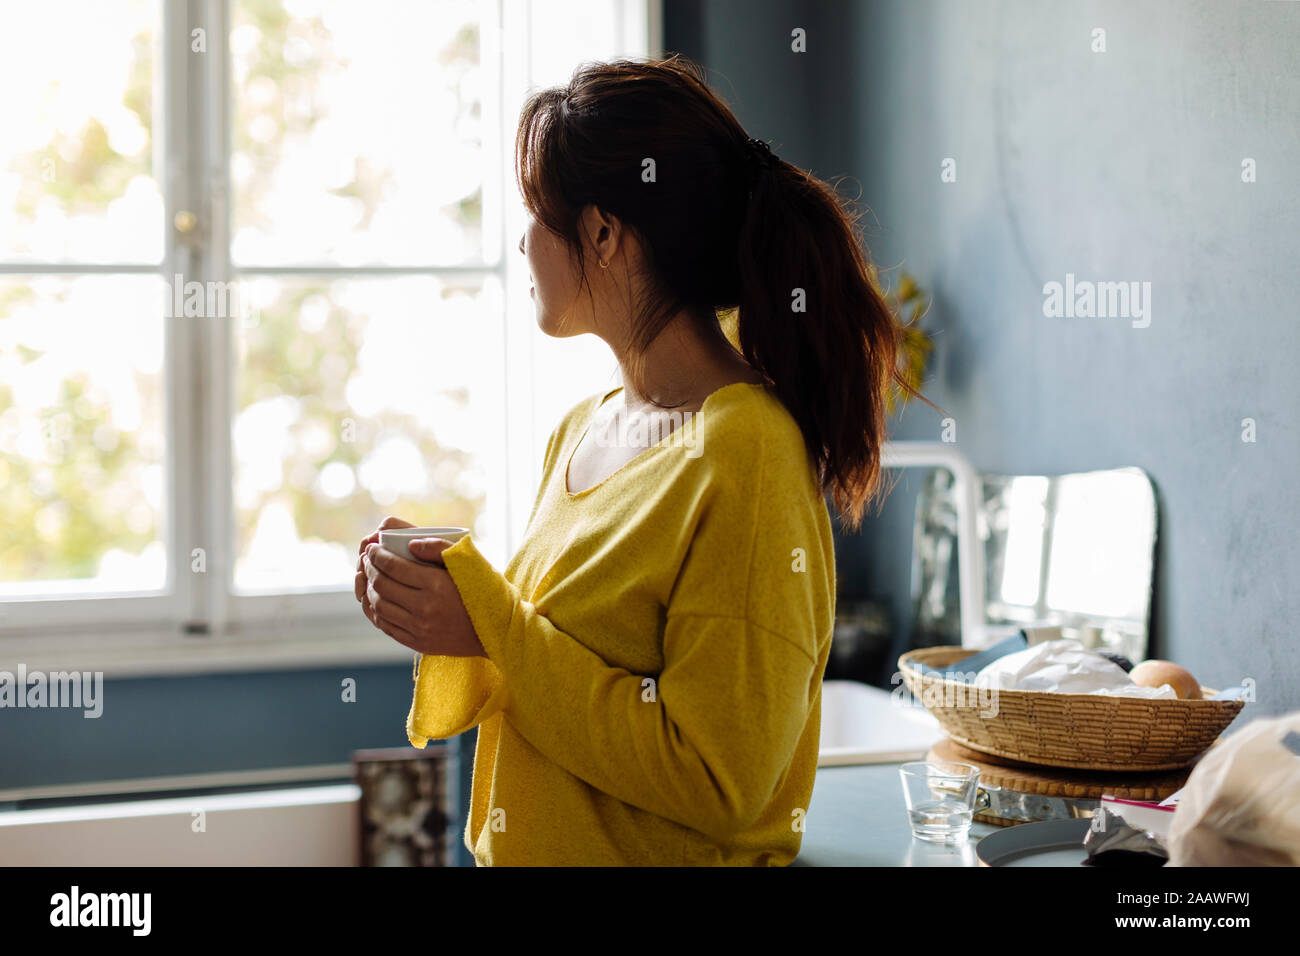 woman drinking tea in office kitchenet Stock Photo